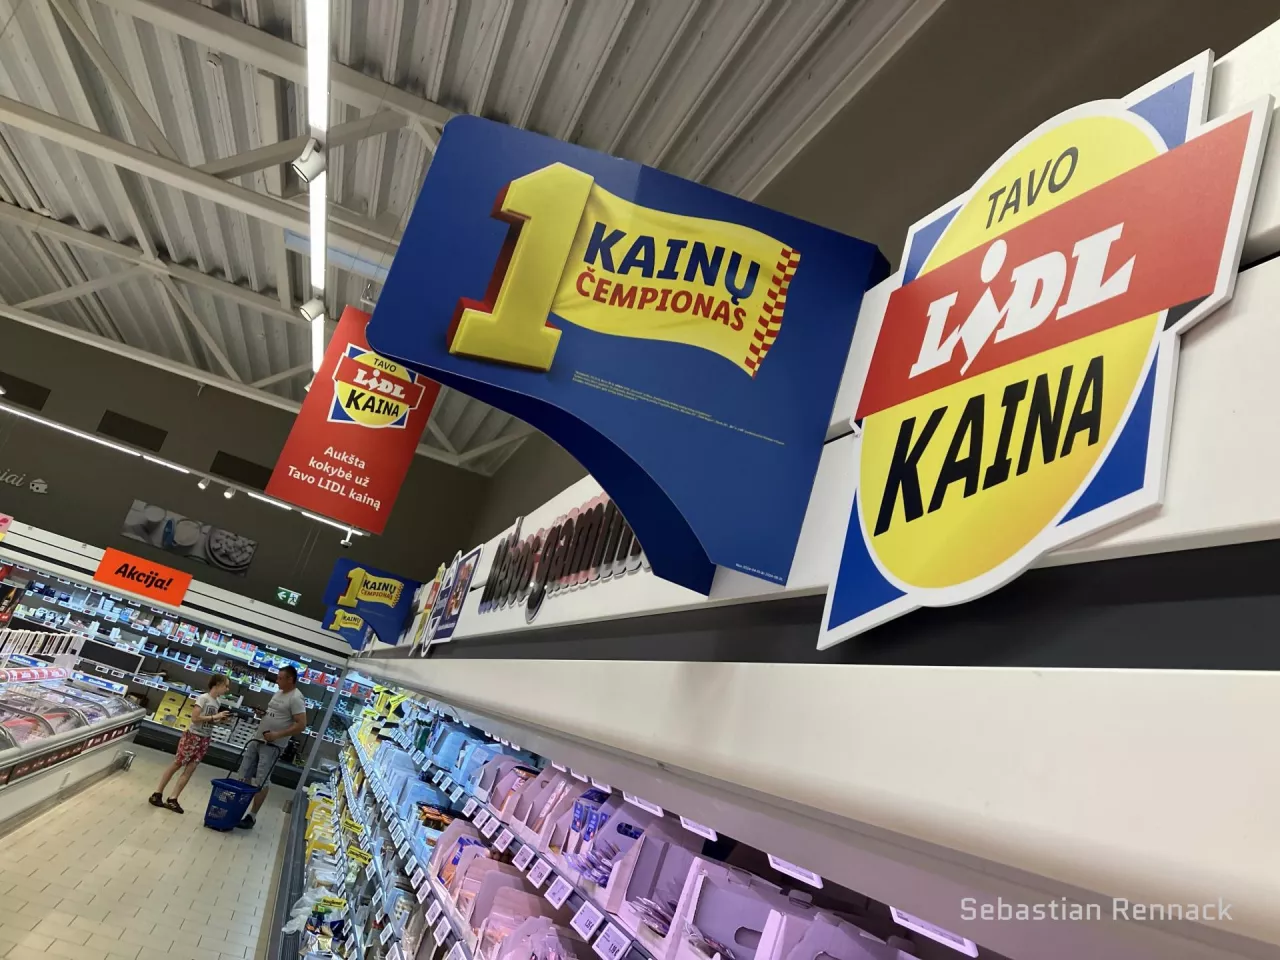 Kampania Lidla „Kainų Ćempionas” (przywództwo cenowe) dominuje obecnie w komunikacji w sklepach (fot. Sebastian Rennack)